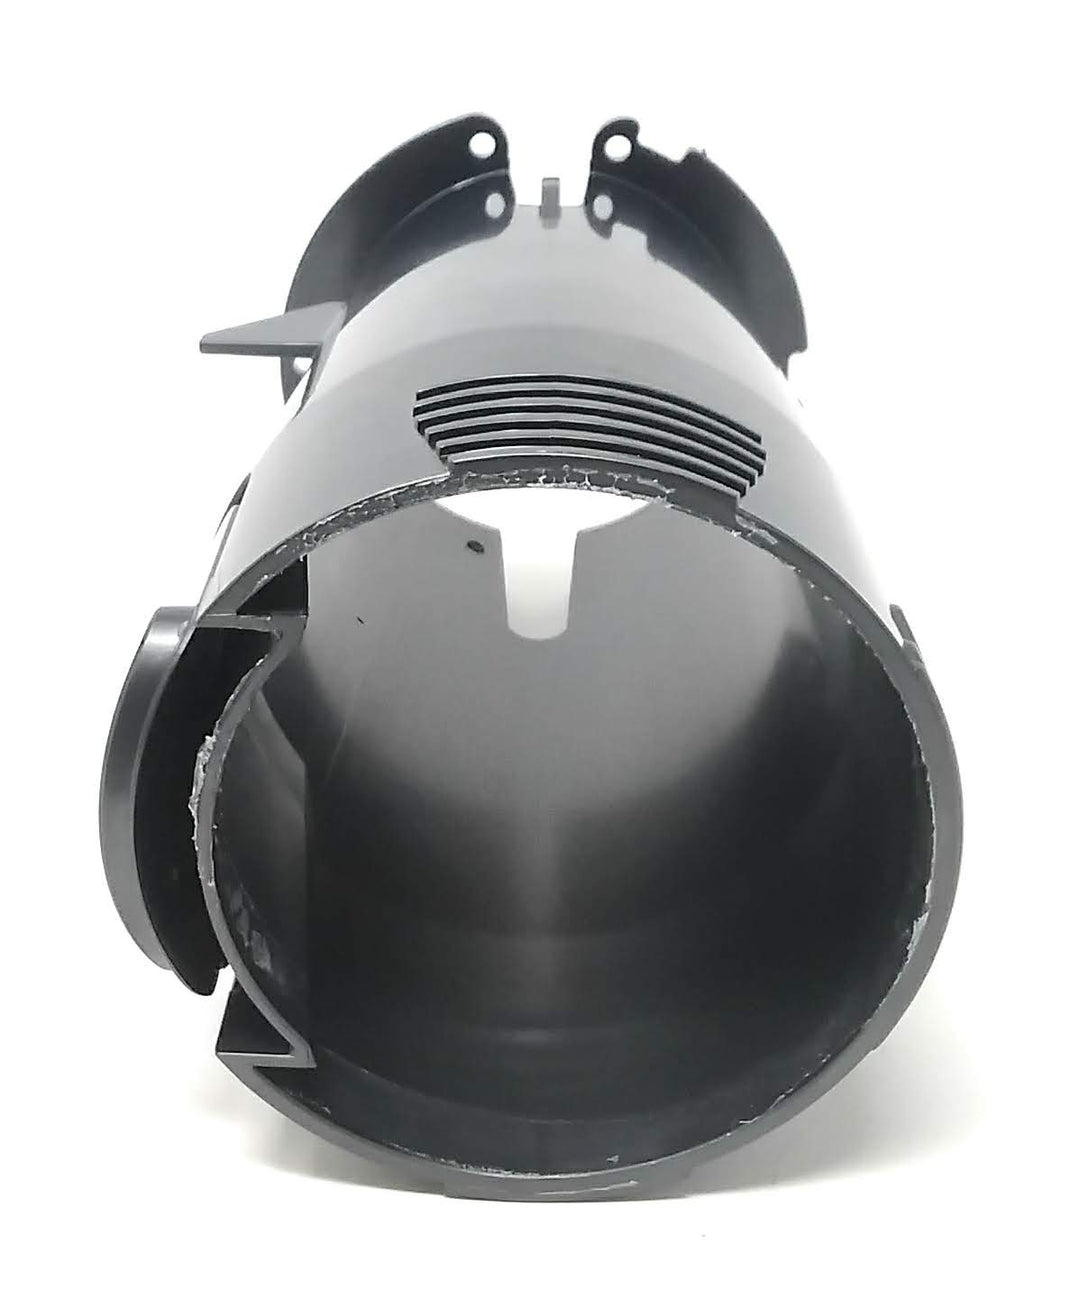 Top View of Pentair Racer / Racer LS Pressure Side Cleaner Vacuum Tube Kit - ePoolSupply